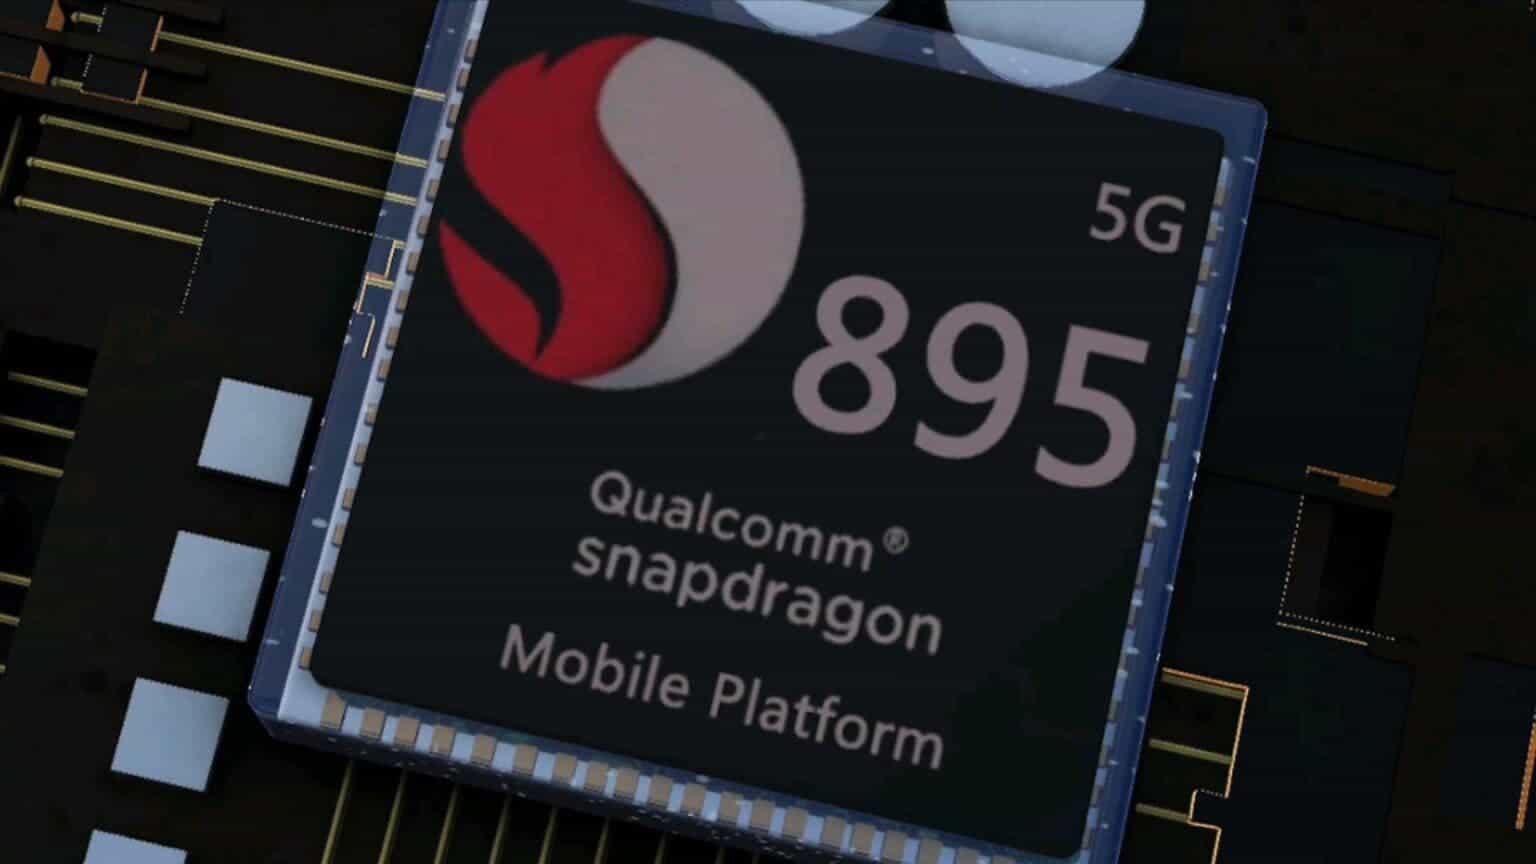 İlk Snapdragon 895 Akıllı Telefonu Kim Piyasaya Sürecek?